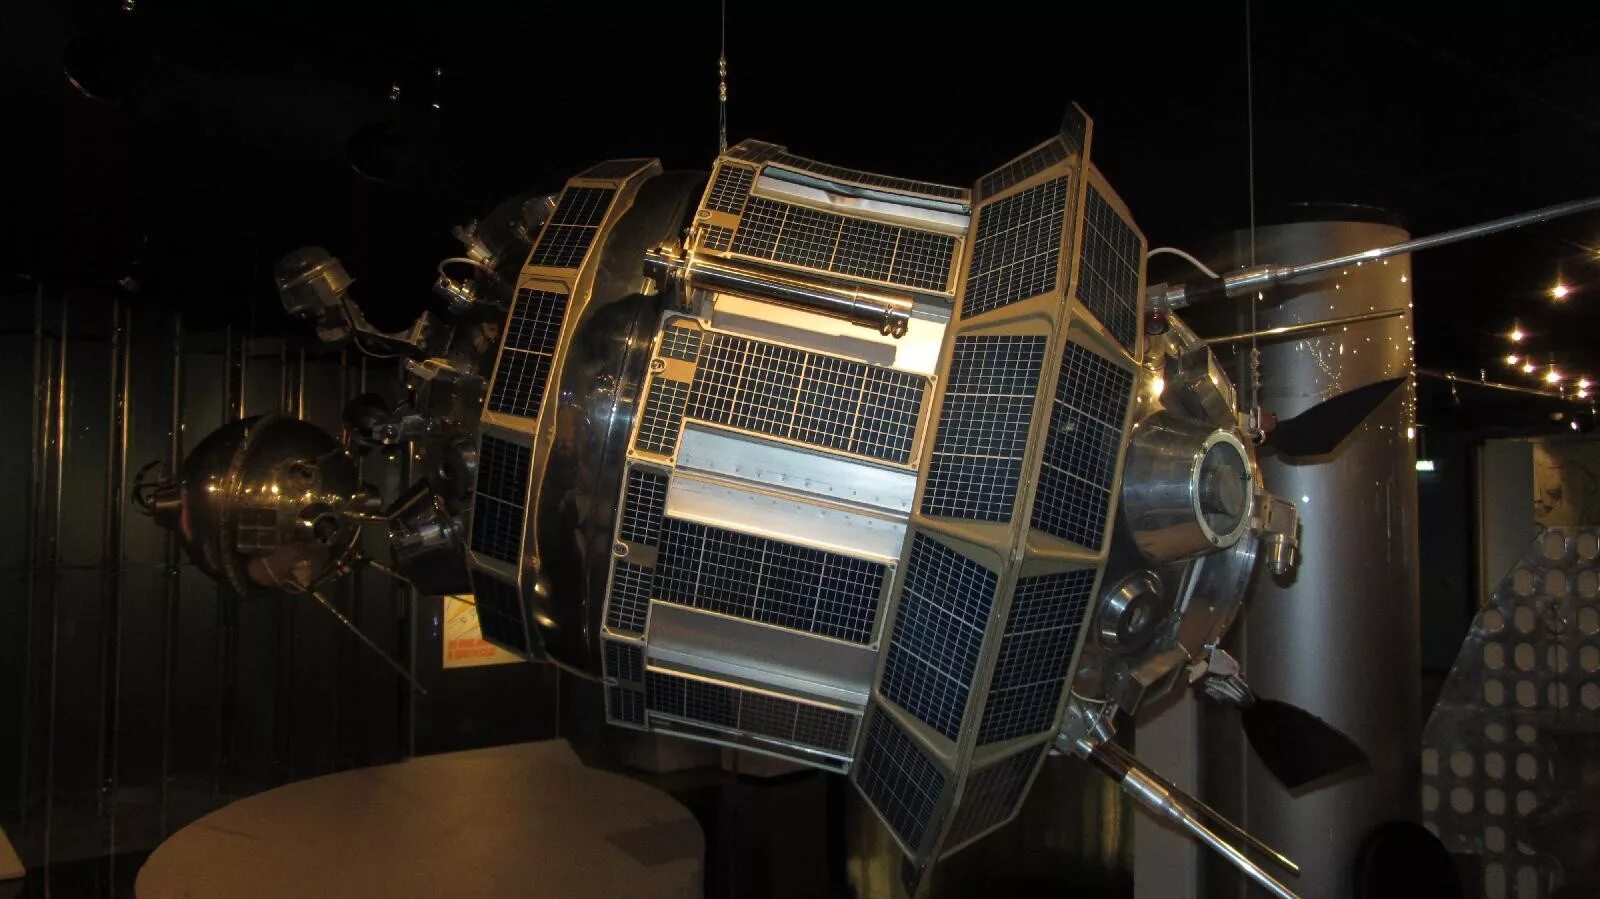 55 космических лет. Луна-4 автоматическая межпланетная станция. Луна-3 автоматическая межпланетная станция. Луна-2 автоматическая межпланетная станция. Советская автоматическая межпланетная станция «Луна-1».